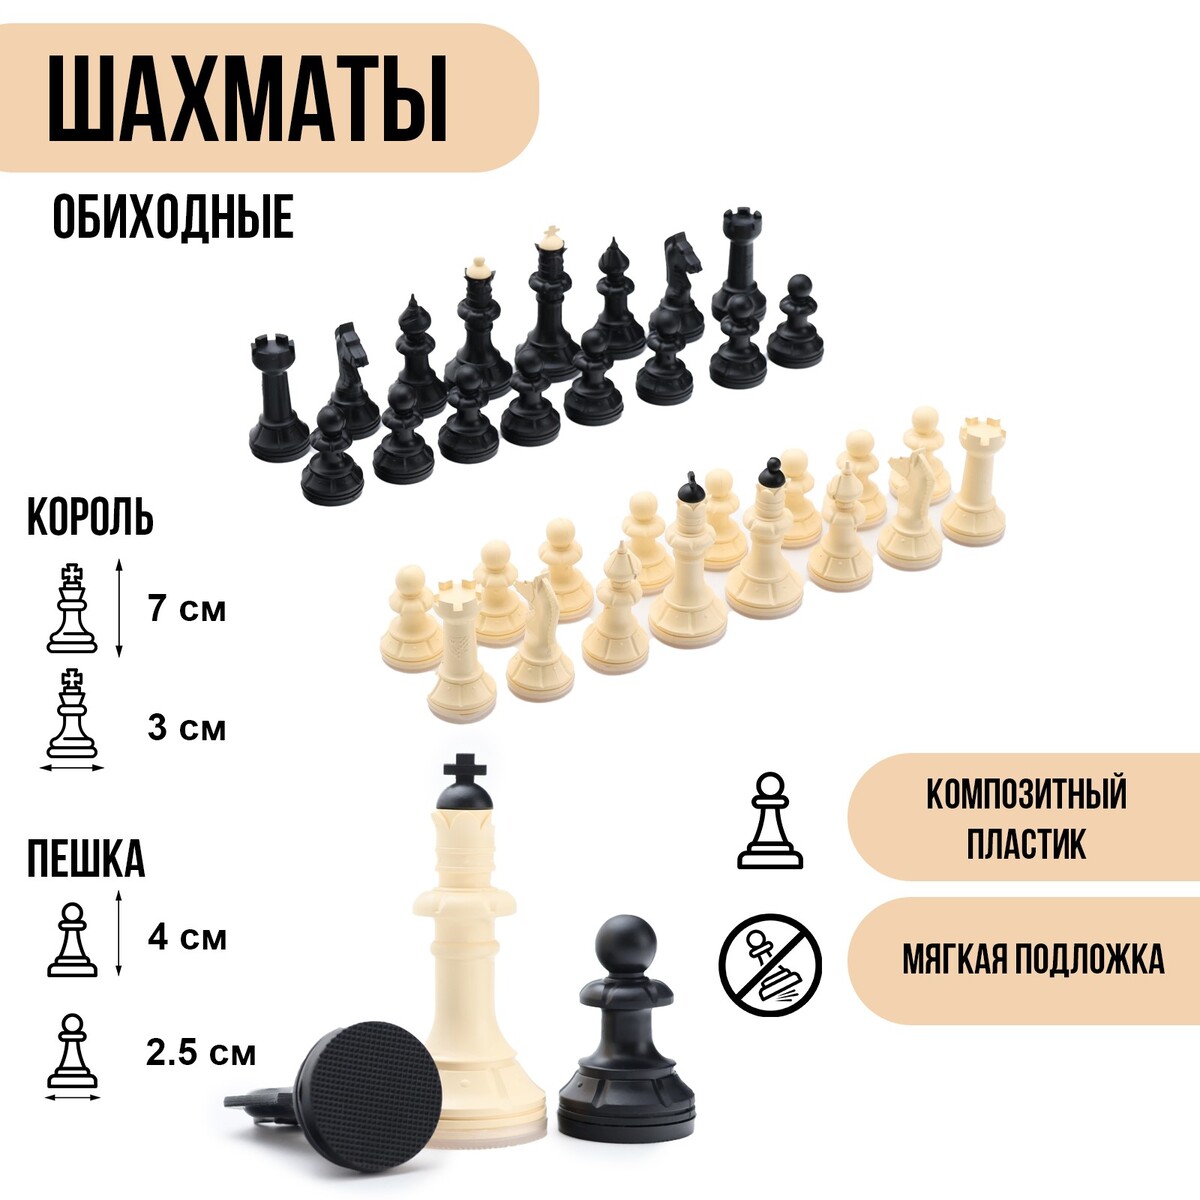 Шахматные фигуры обиходные, король h=7 см, пешка-4 см, пластик король сусликов